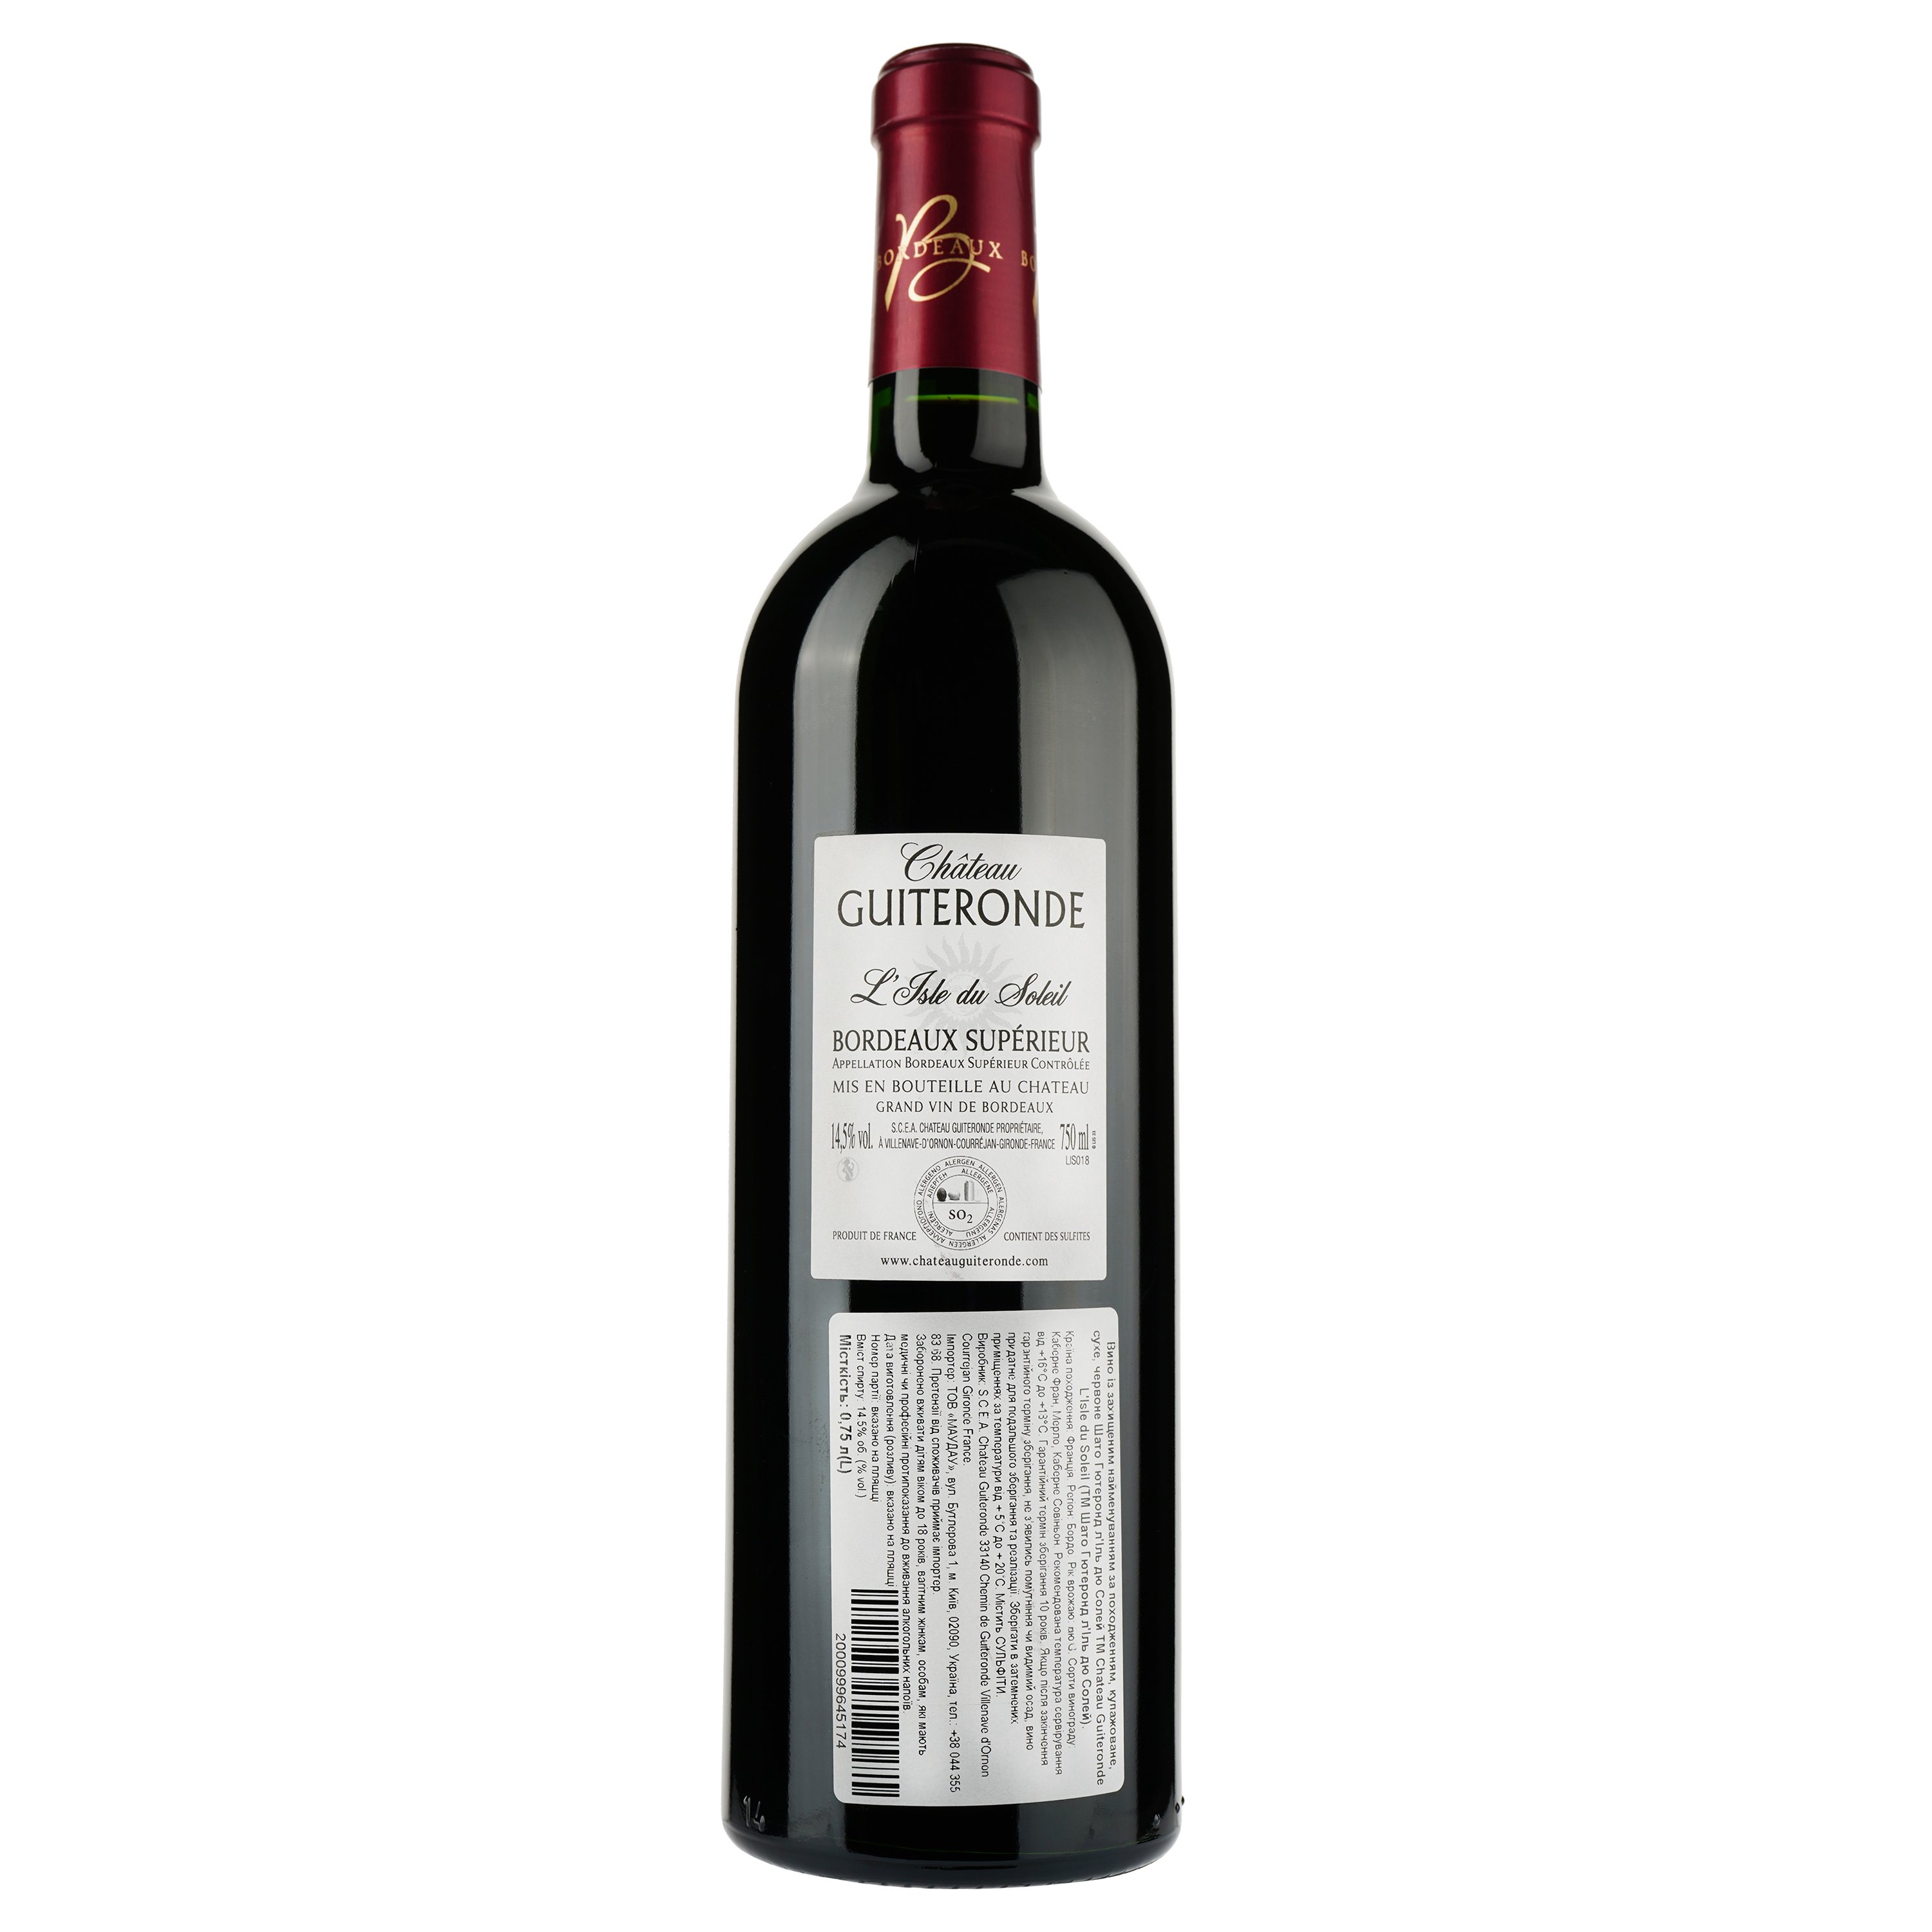 Вино Chateau Guiteronde L'Isle du Soleil AOP Bordeaux Superieur 2018, красное, сухое, 0,75 л - фото 2